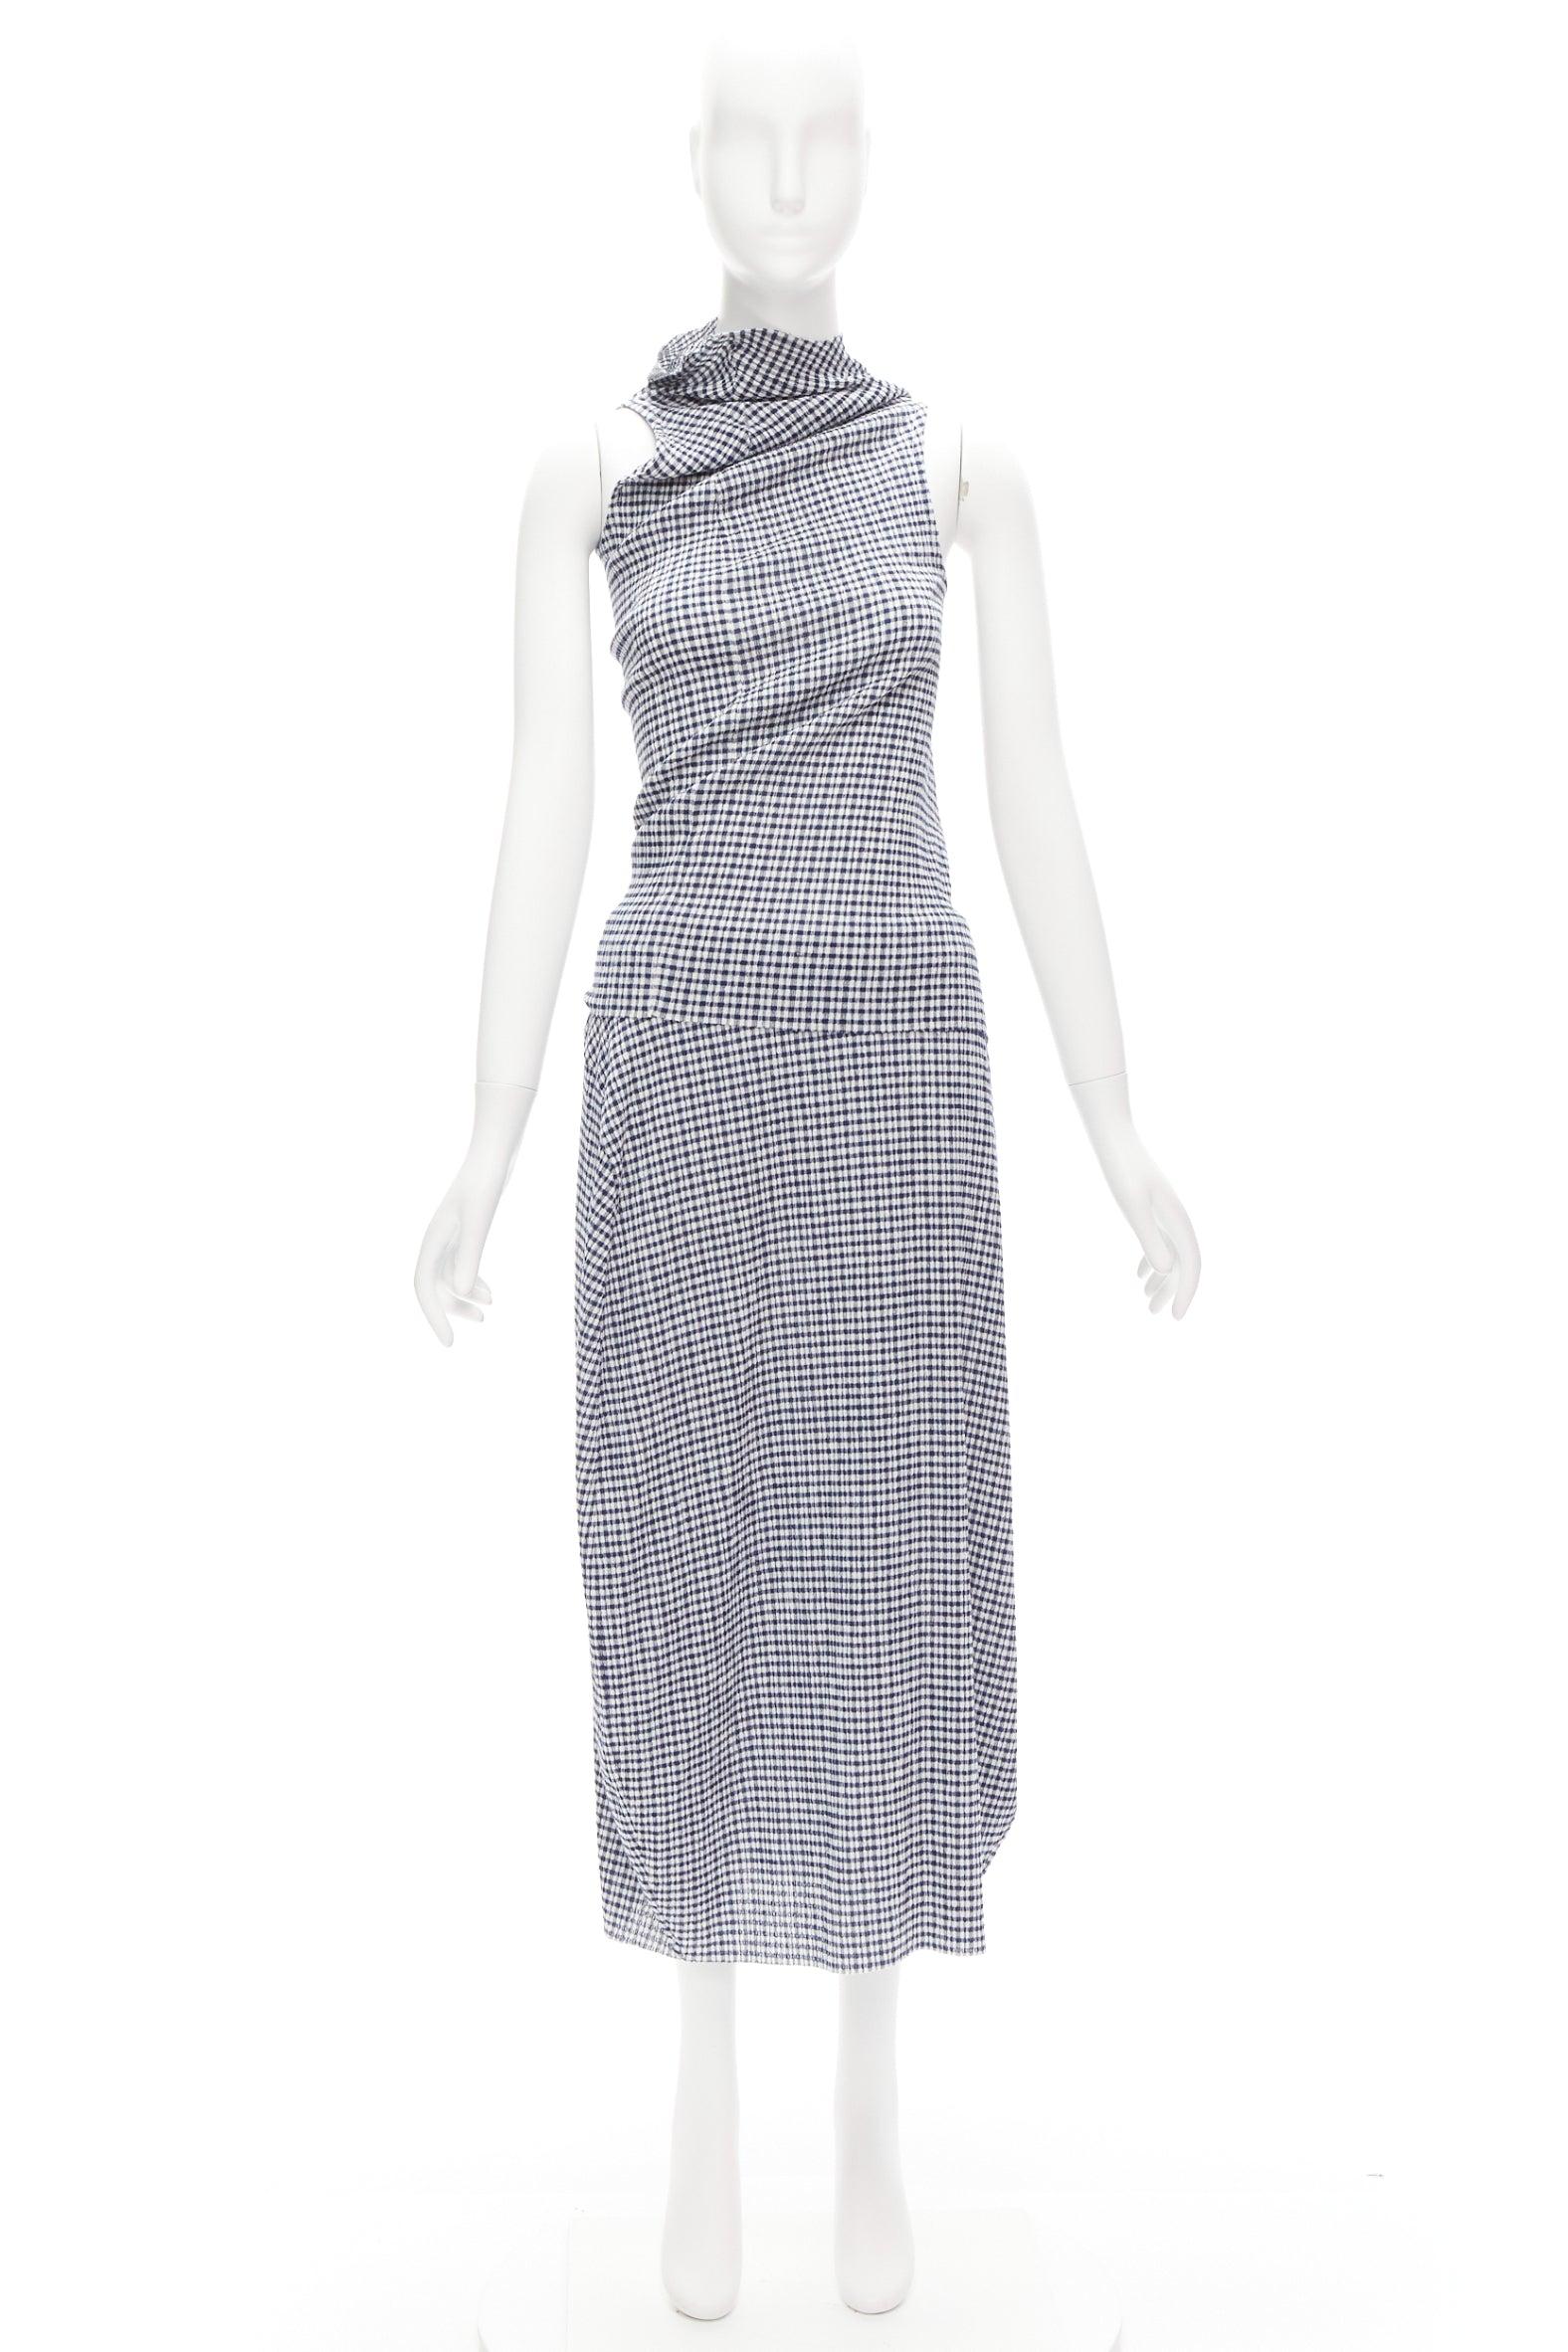 JIL SANDER blue white gingham crinkled asymmetric top skirt set FR34 XS For Sale 8